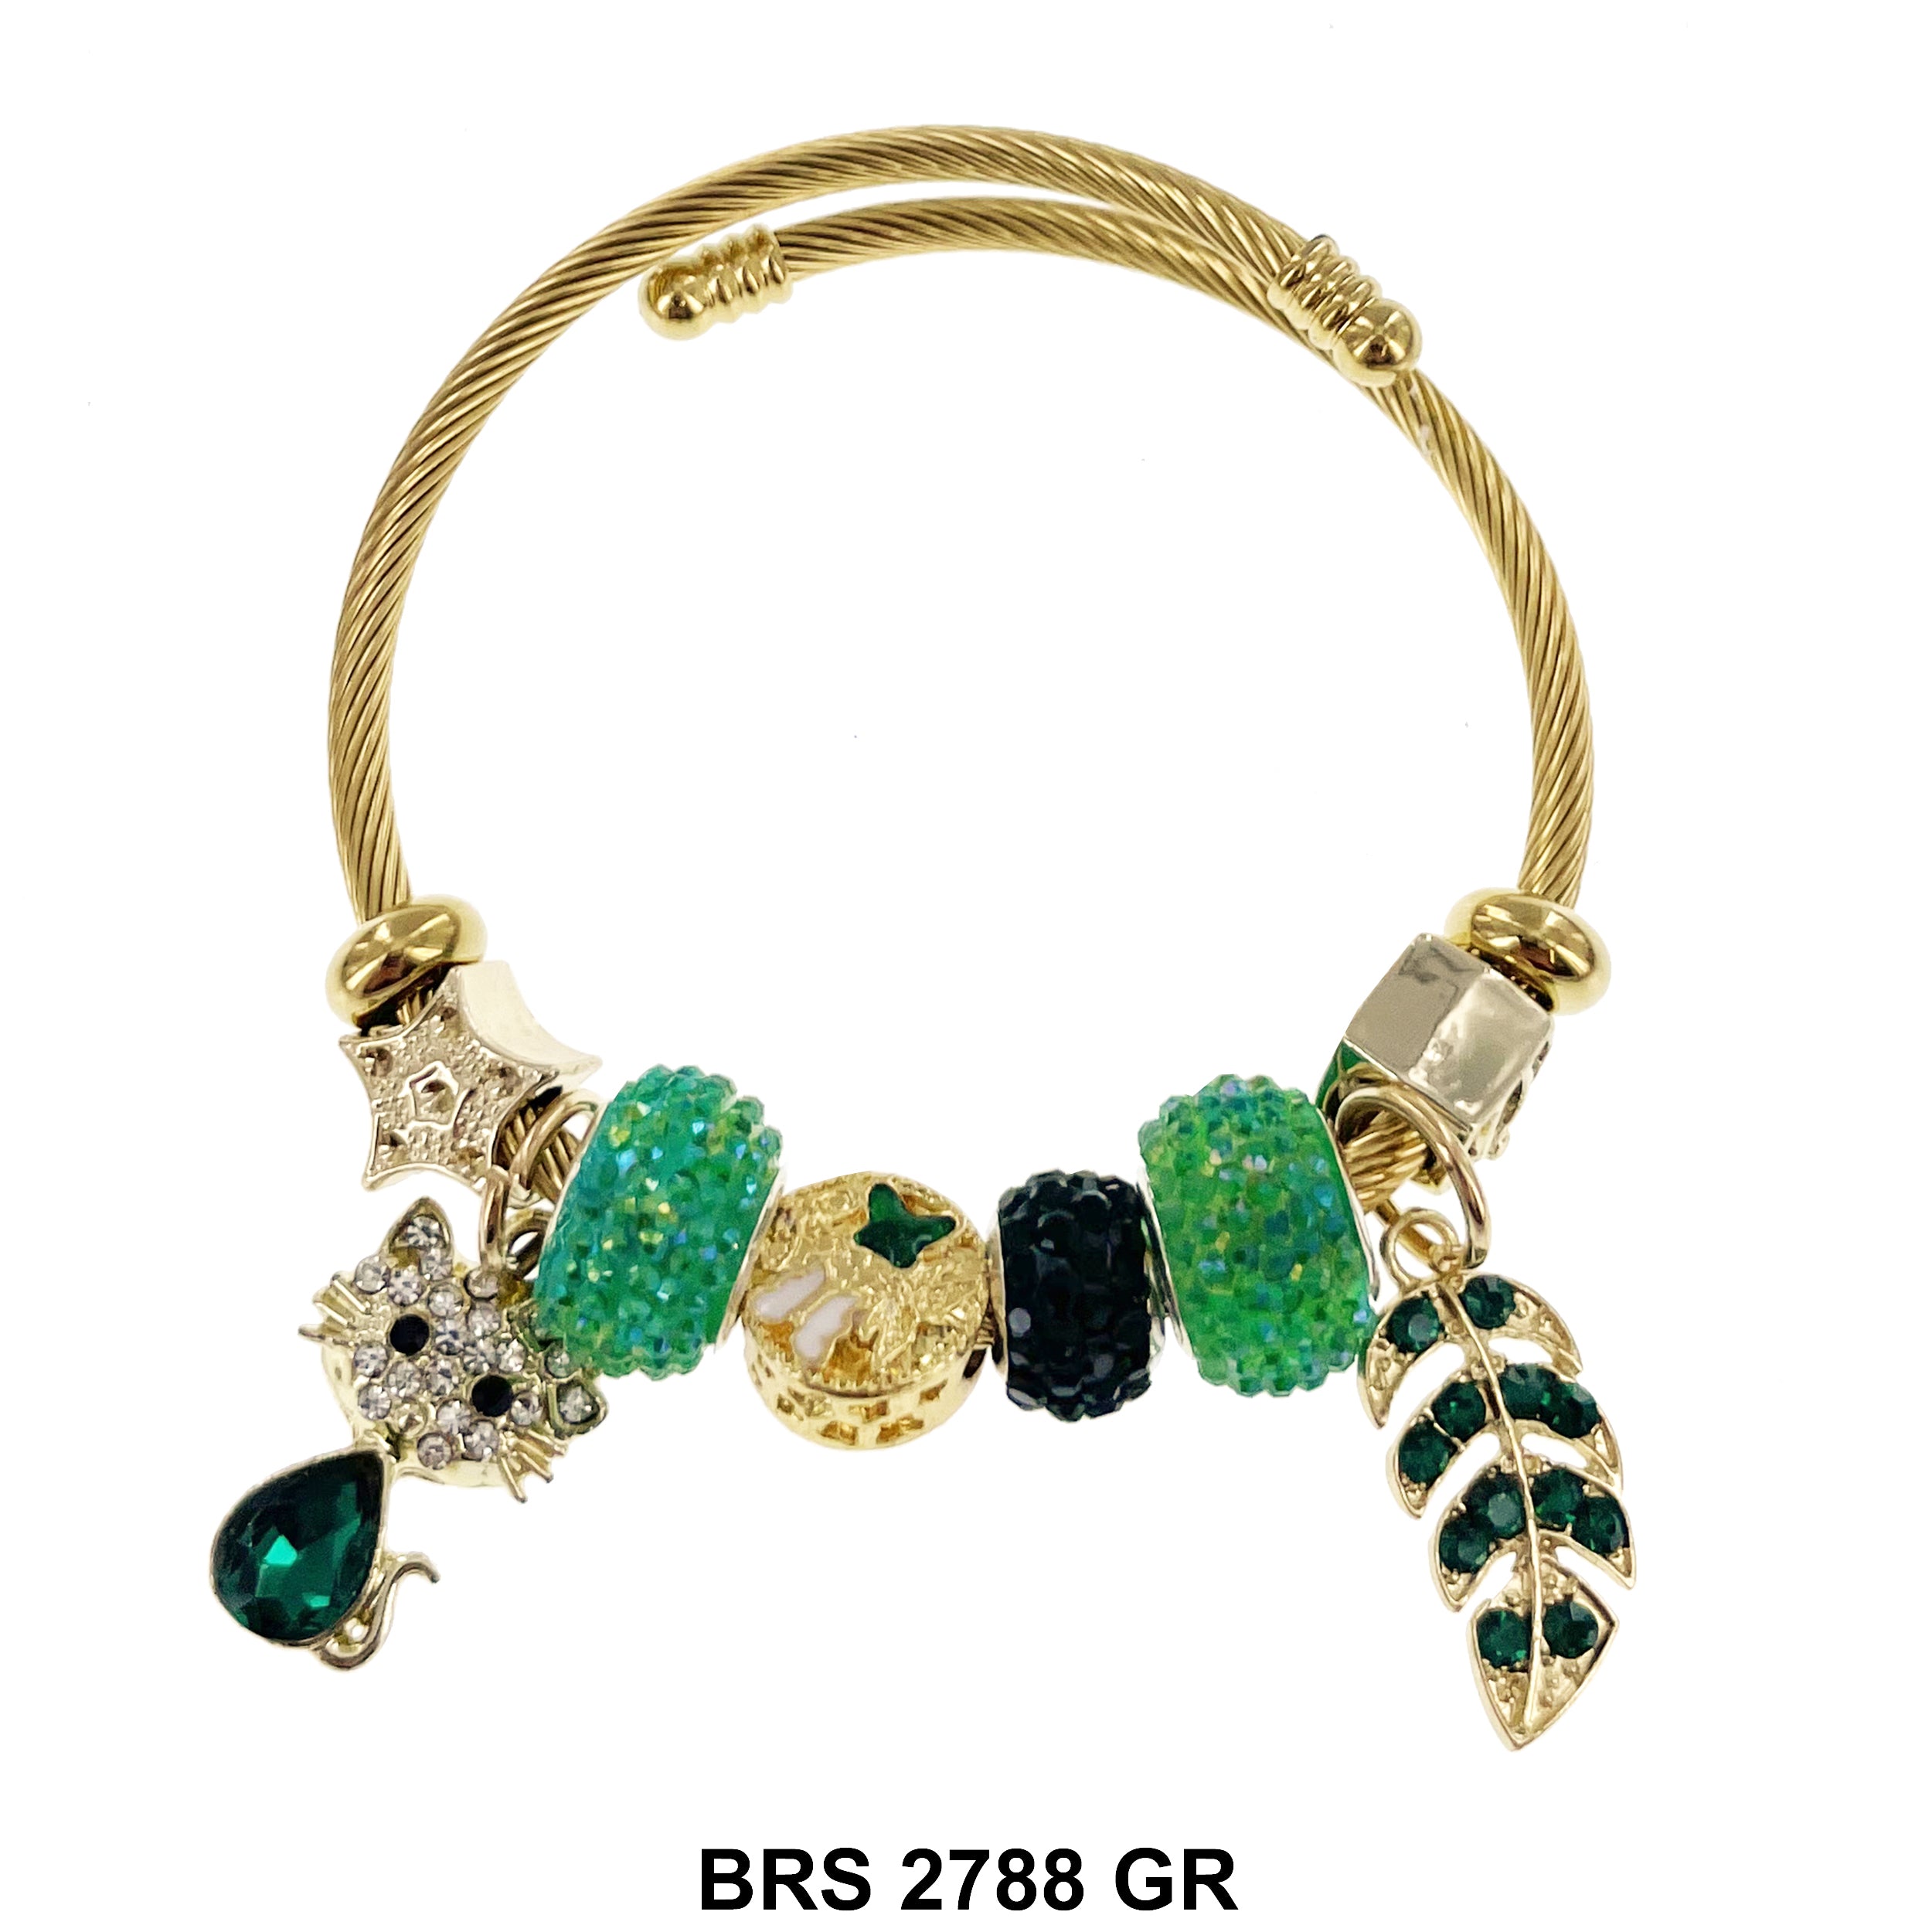 Hanging Charm Bracelet BRS 2788 GR